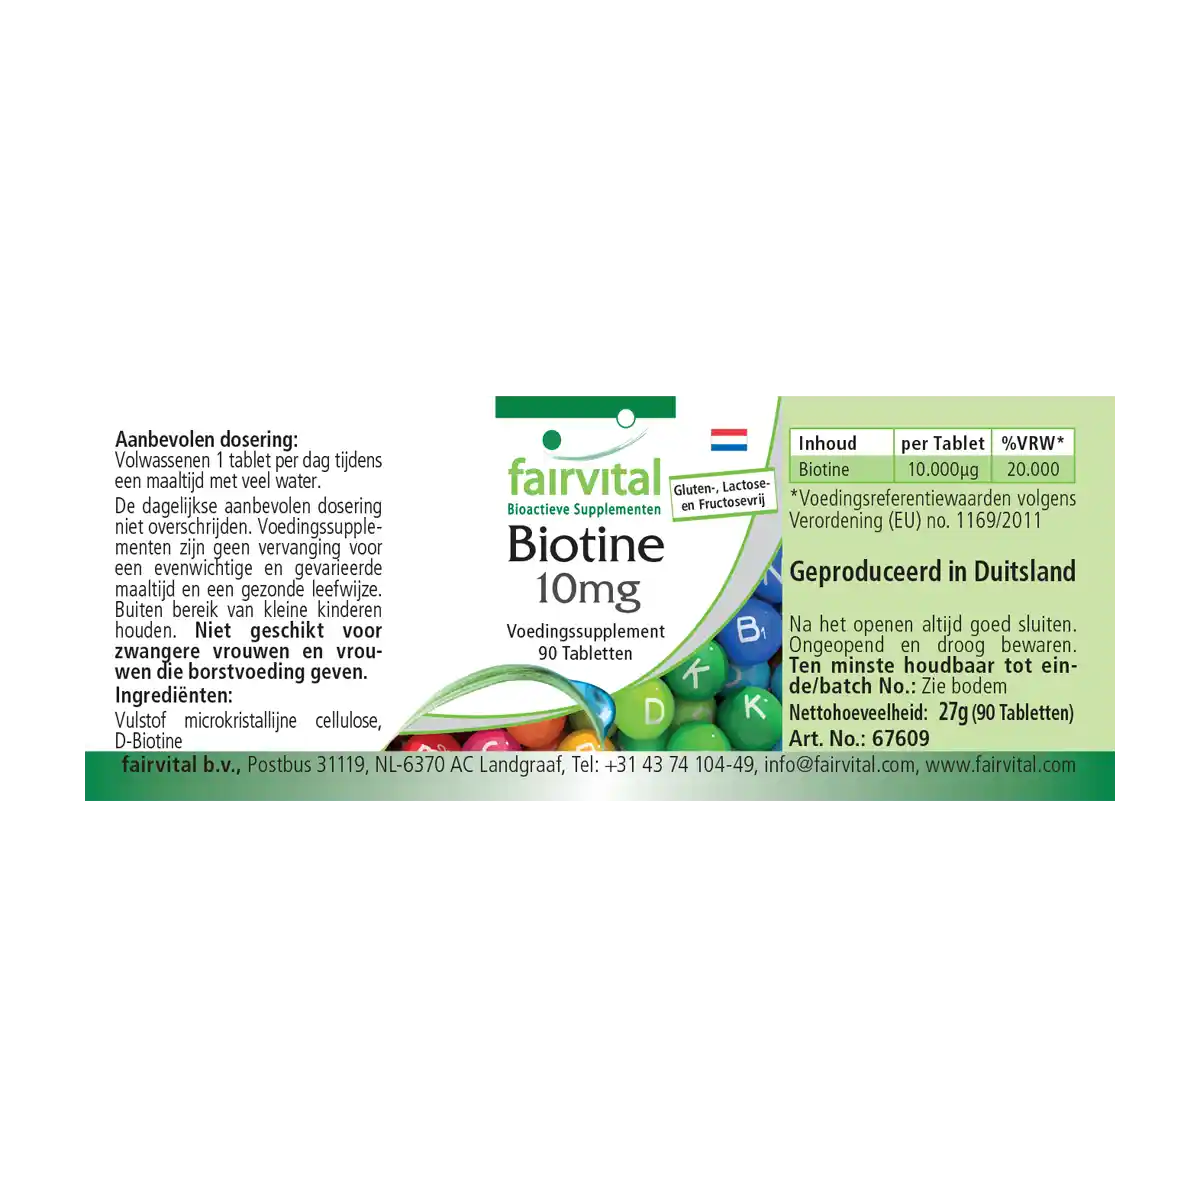 Biotina 10mg - 90 comprimidos